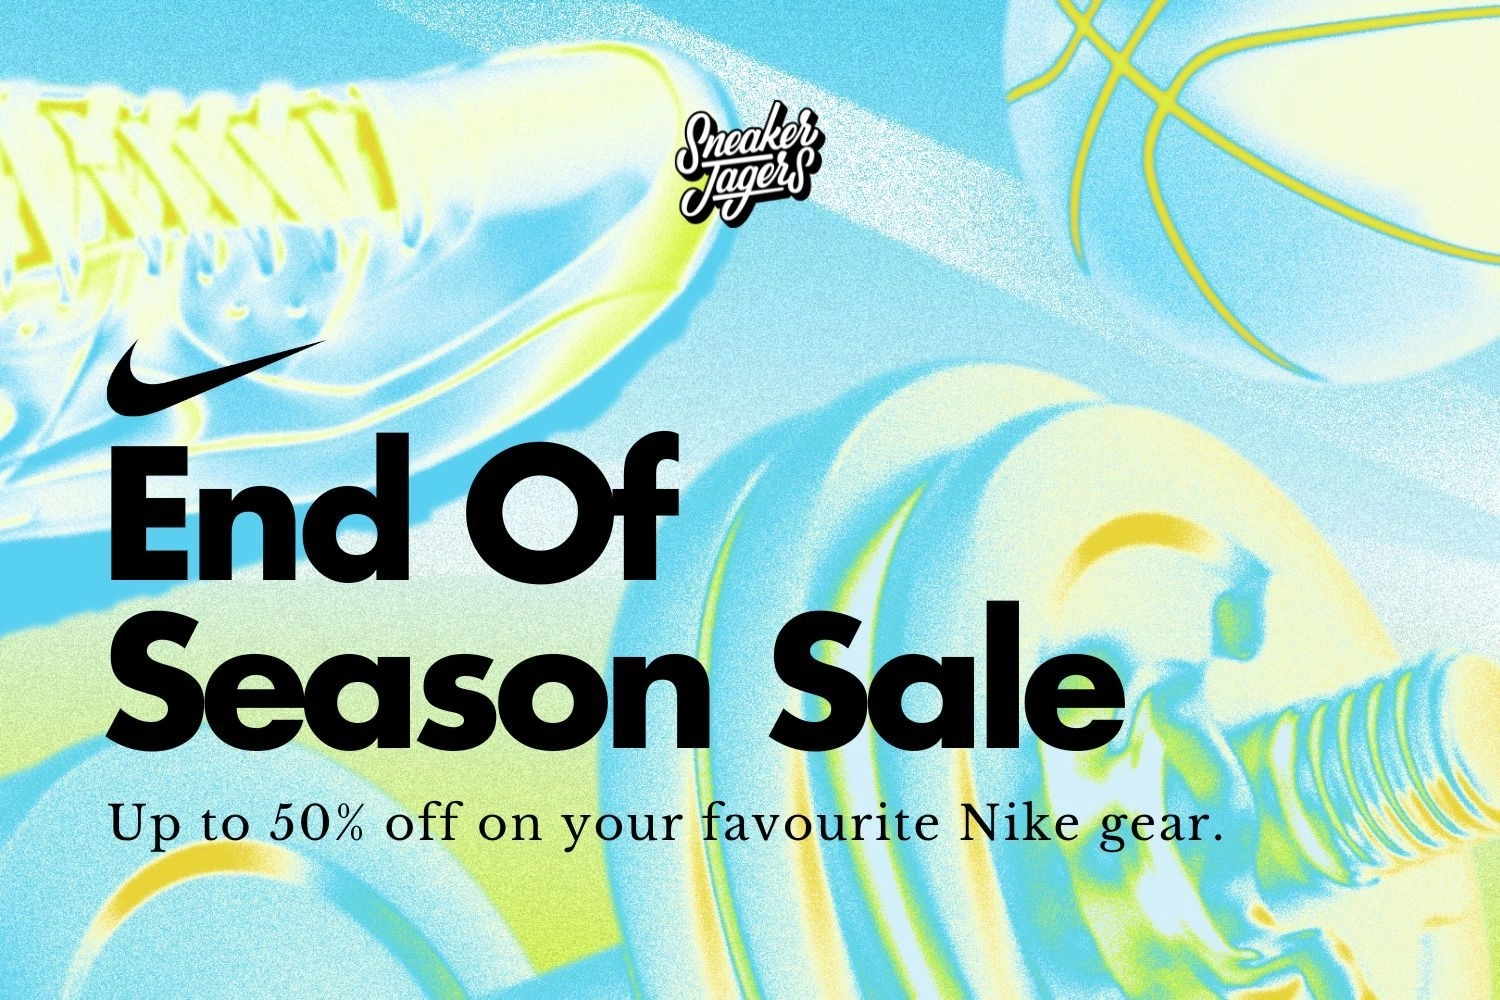 Sichert euch bis zu 50% Rabatt im Nike End of Season Sale